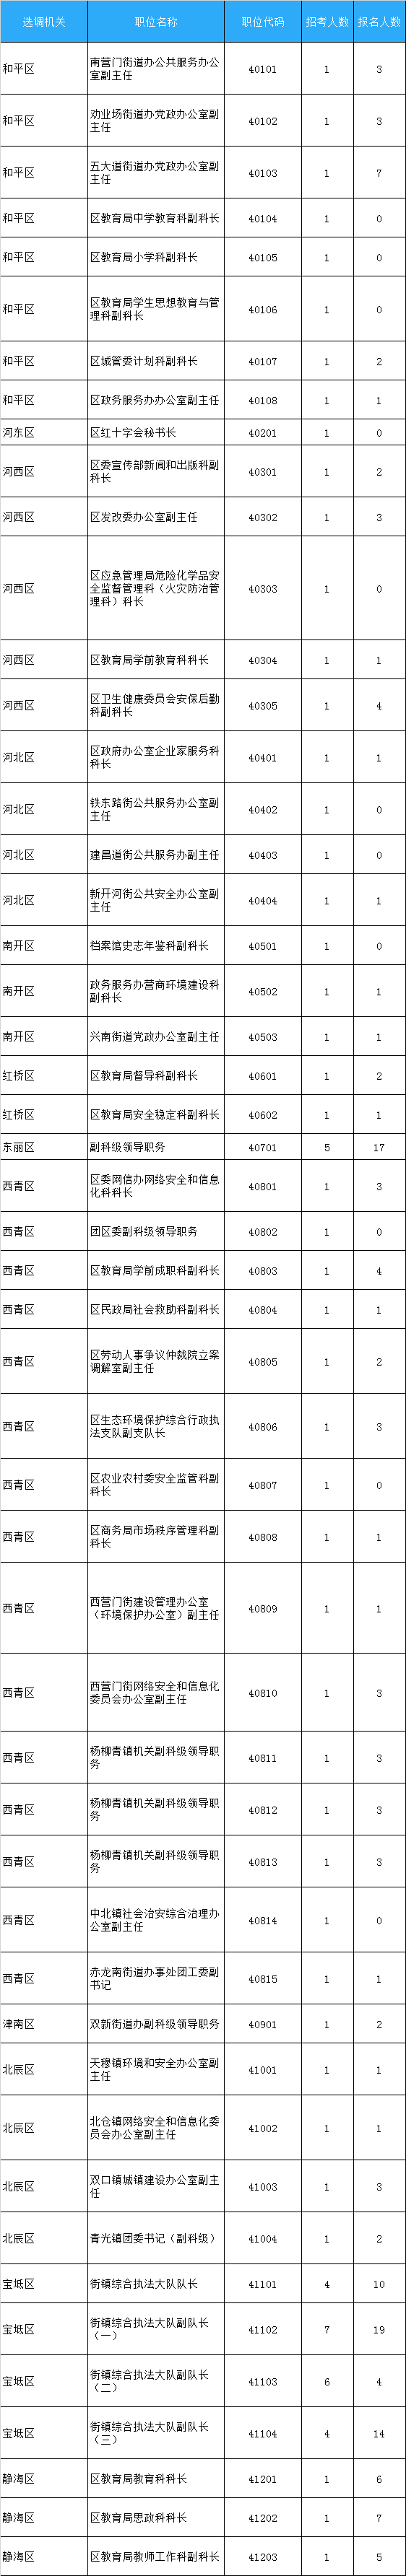 天津市2020年公开选调公务员各职位报名情况.png